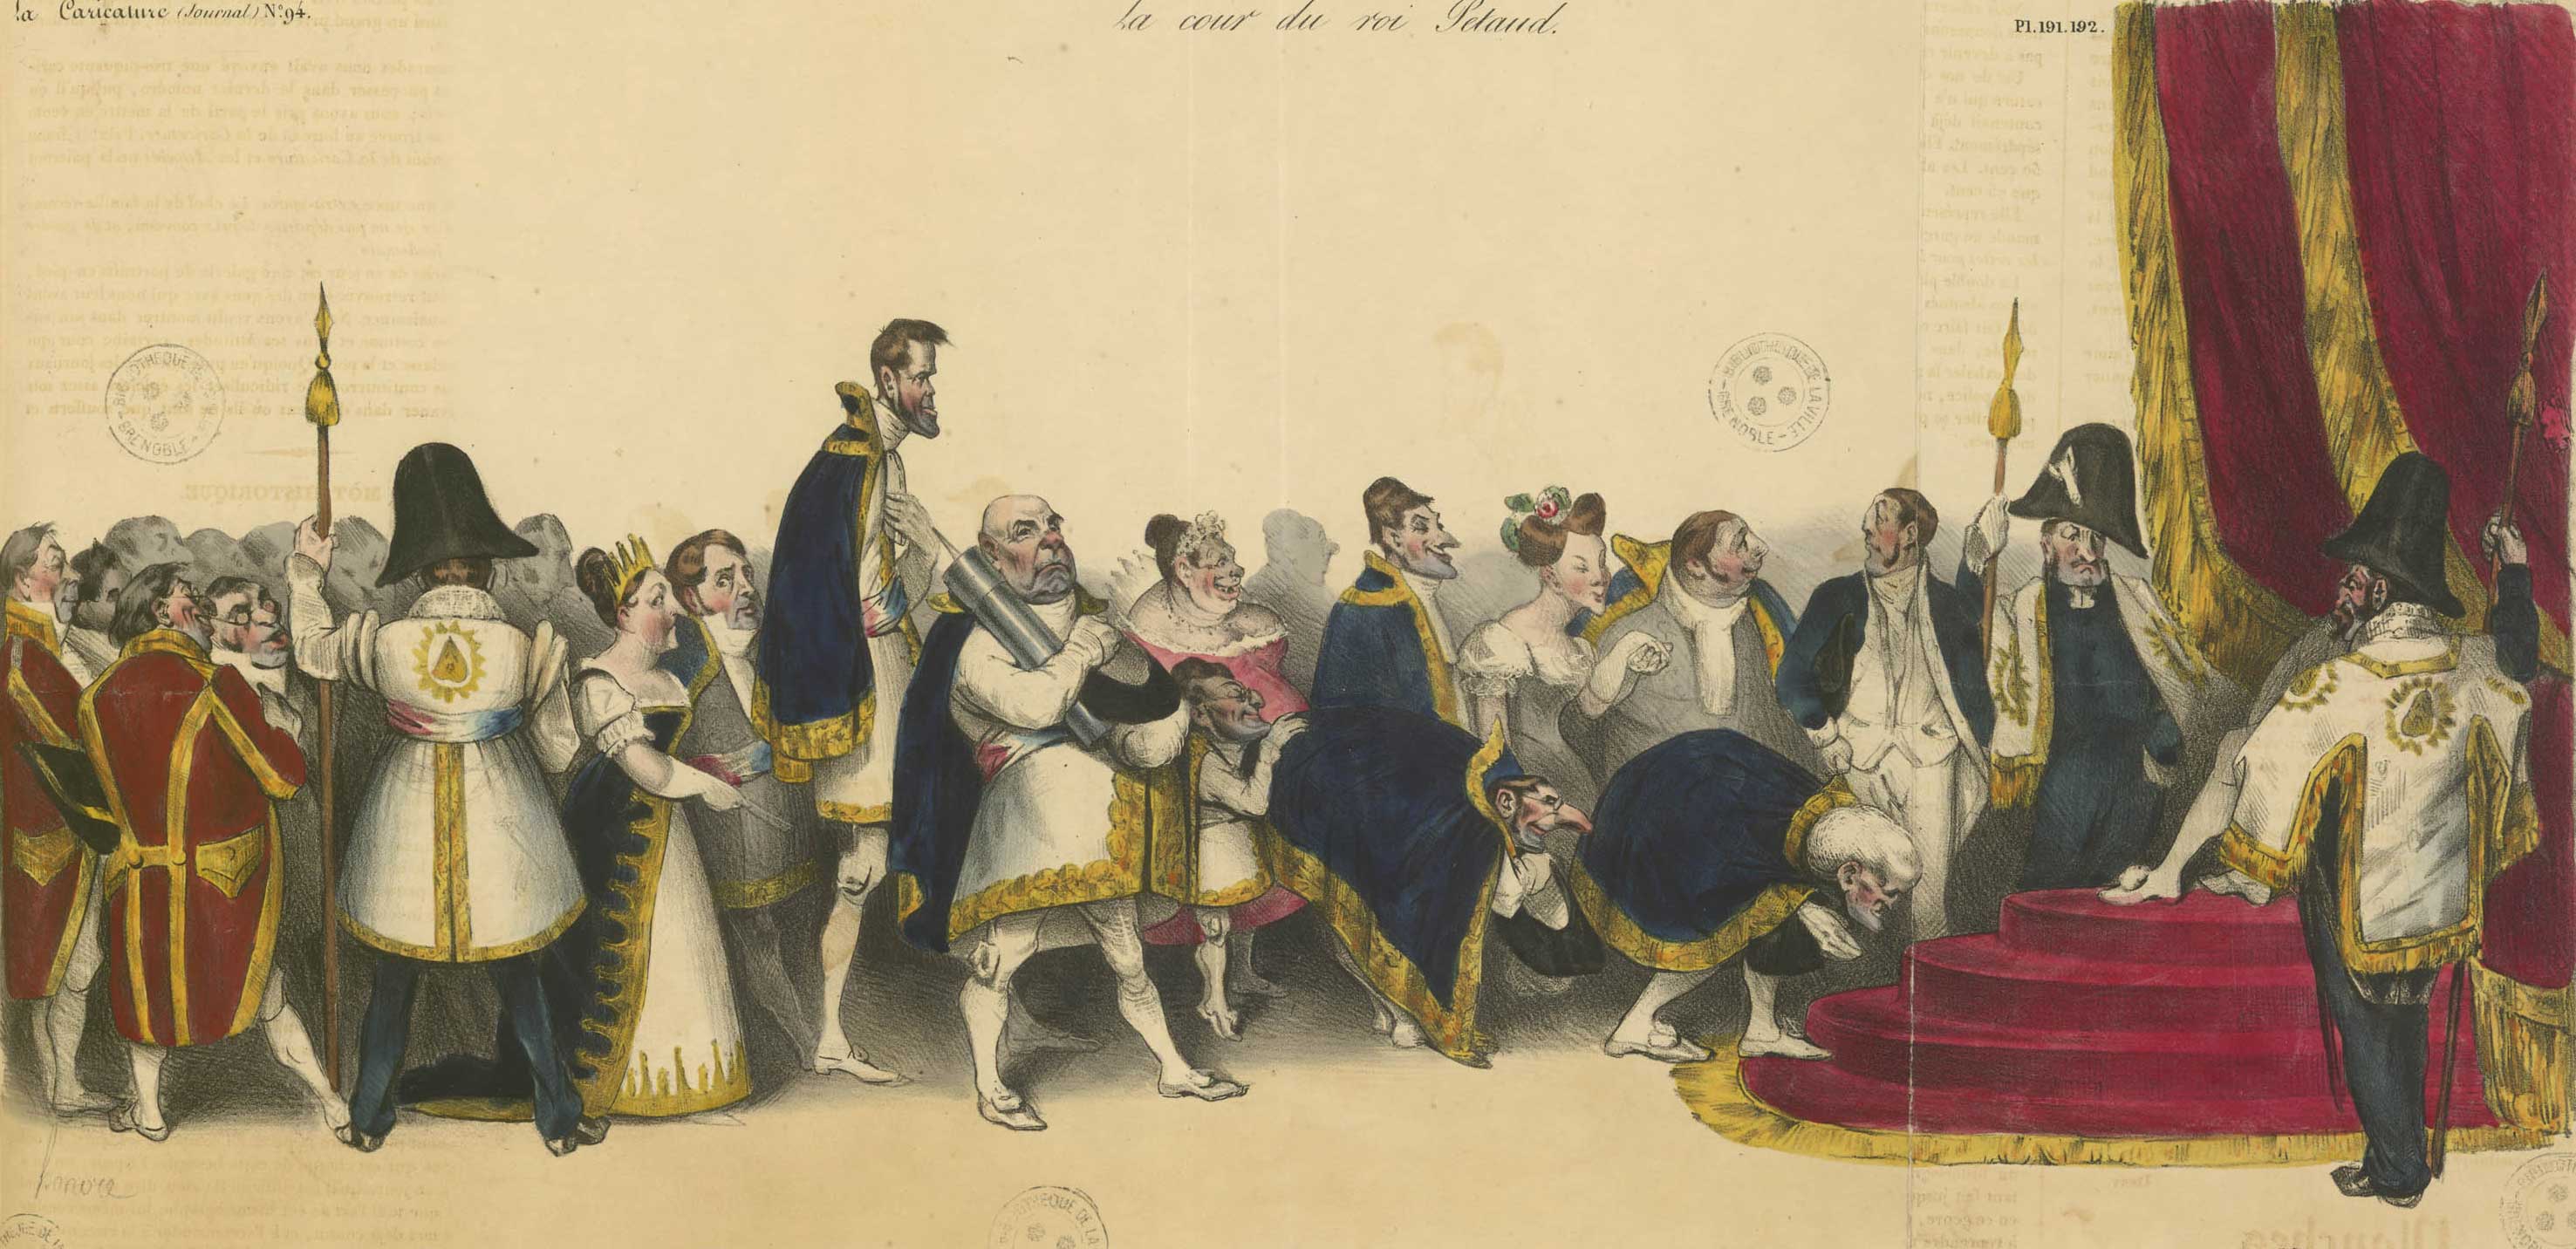 Une rception  la cour du roi Ptaud. - Caricature d'Honor Daumier, dans La Caricature, 25 aot 1832. (A812-2_4_191)